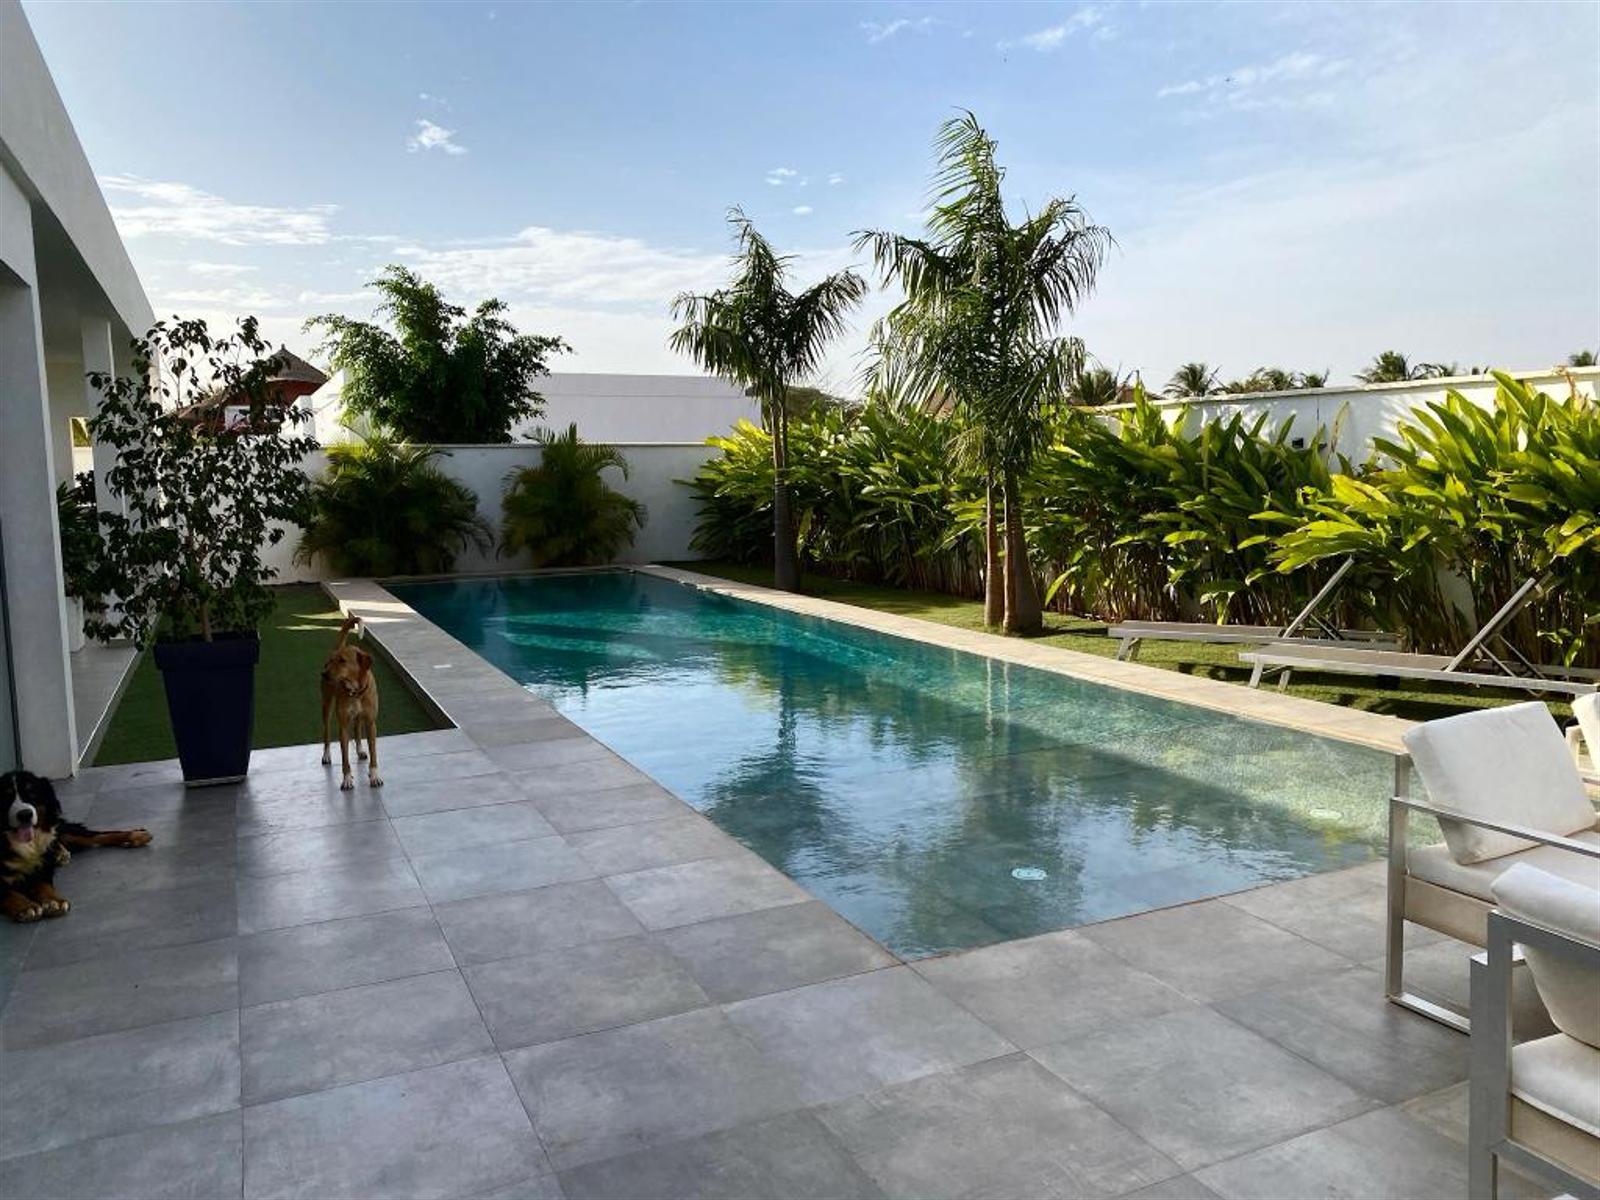 tr�s belle villa moderne  avec piscine  en domaine priv� s�curis� proche mer